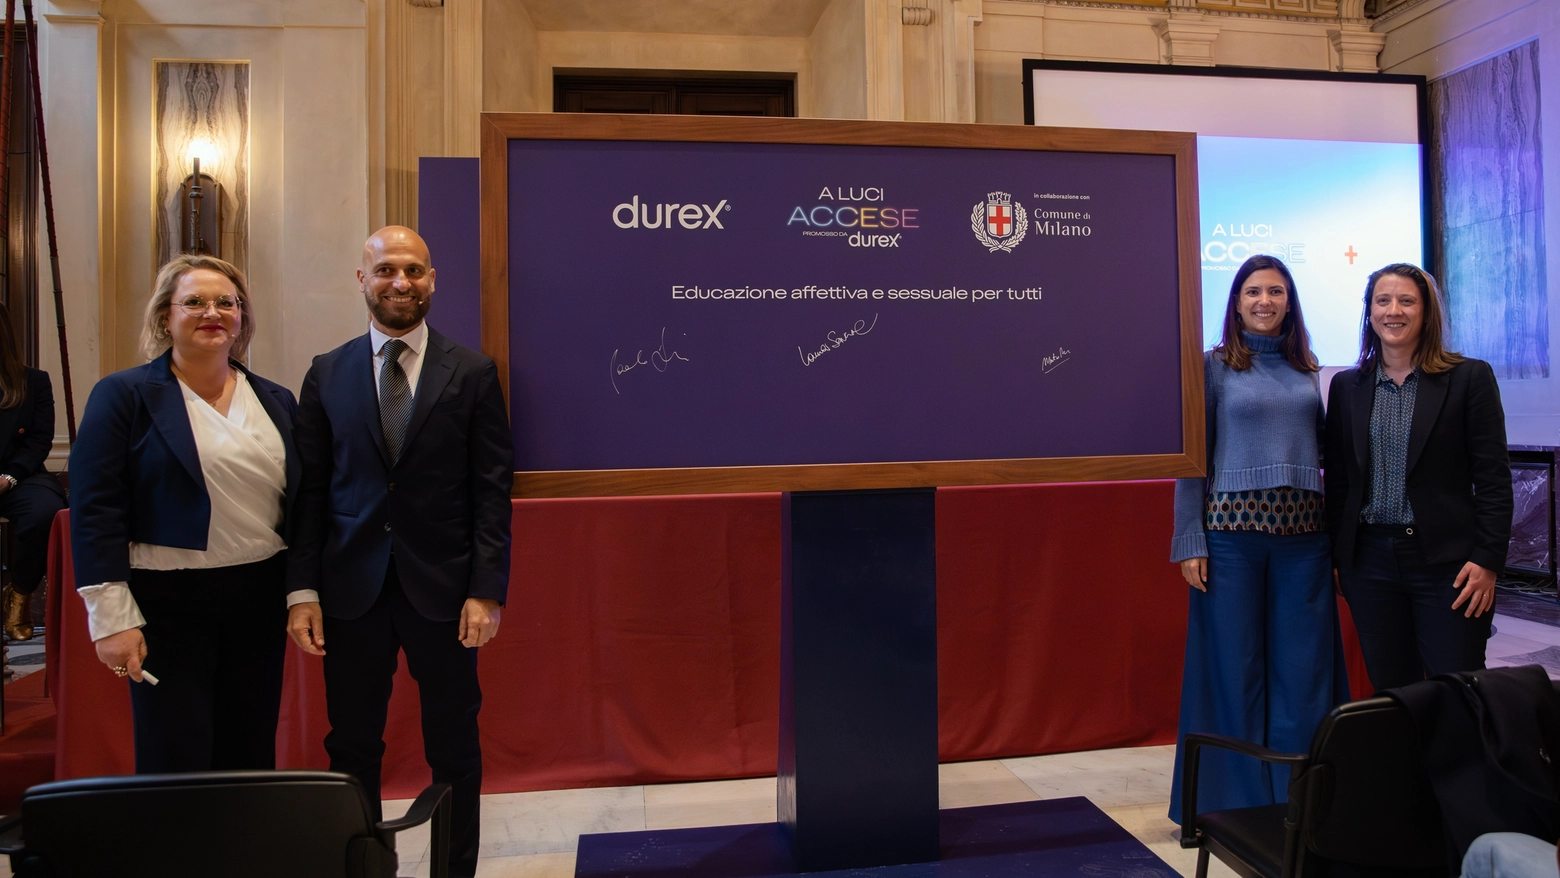 La presentazione del progetto "A Luci accese" che prevede la collaborazione tra Durex e Comune di Milano per attivare l'educazione sessuale ed affettiva a scuola